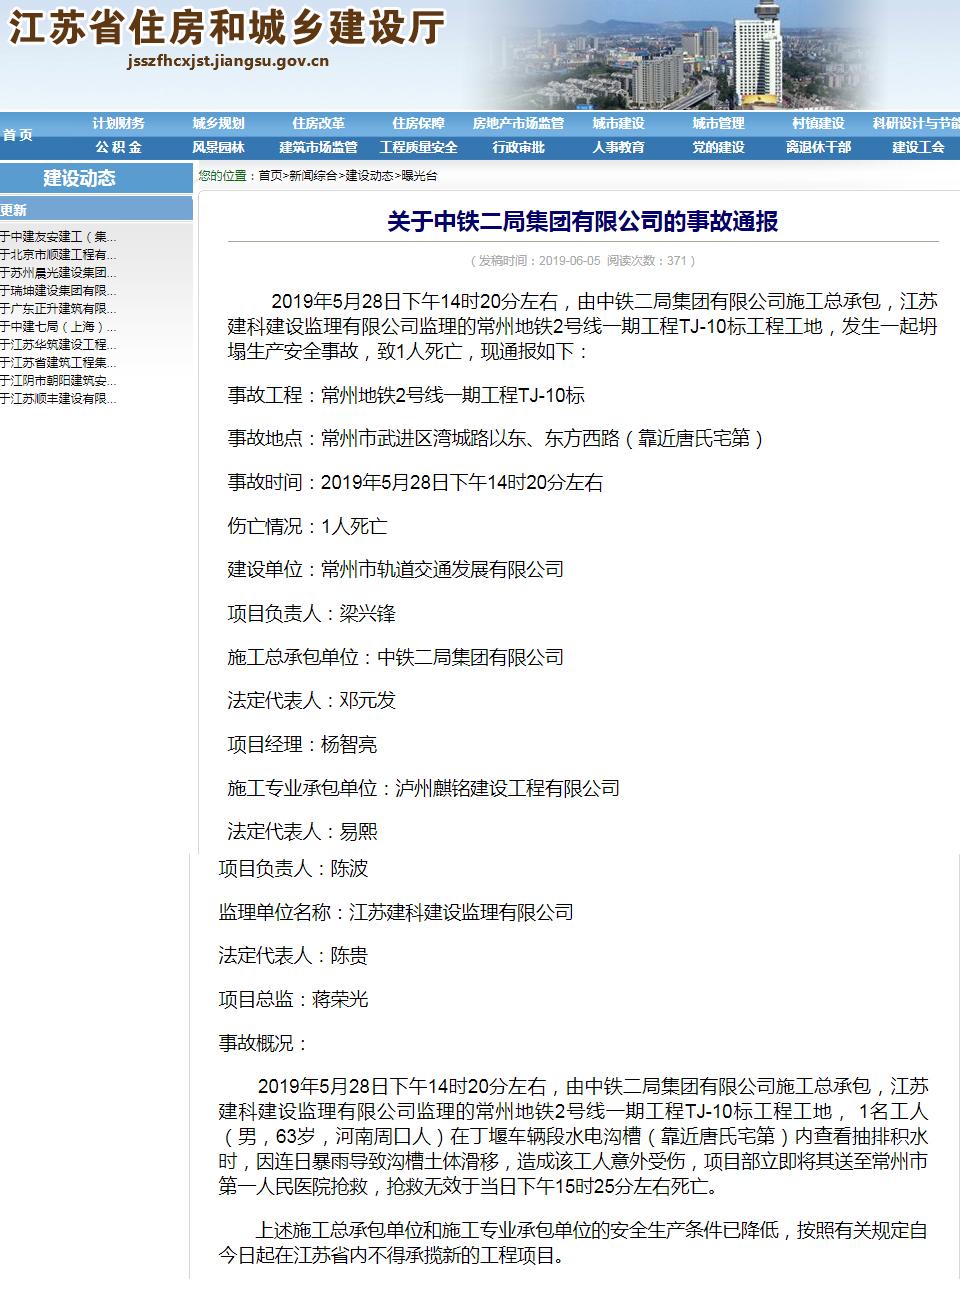 中铁二局集团有限公司因常州地铁2号线工程安全事故被禁止在江苏承揽新工程项目